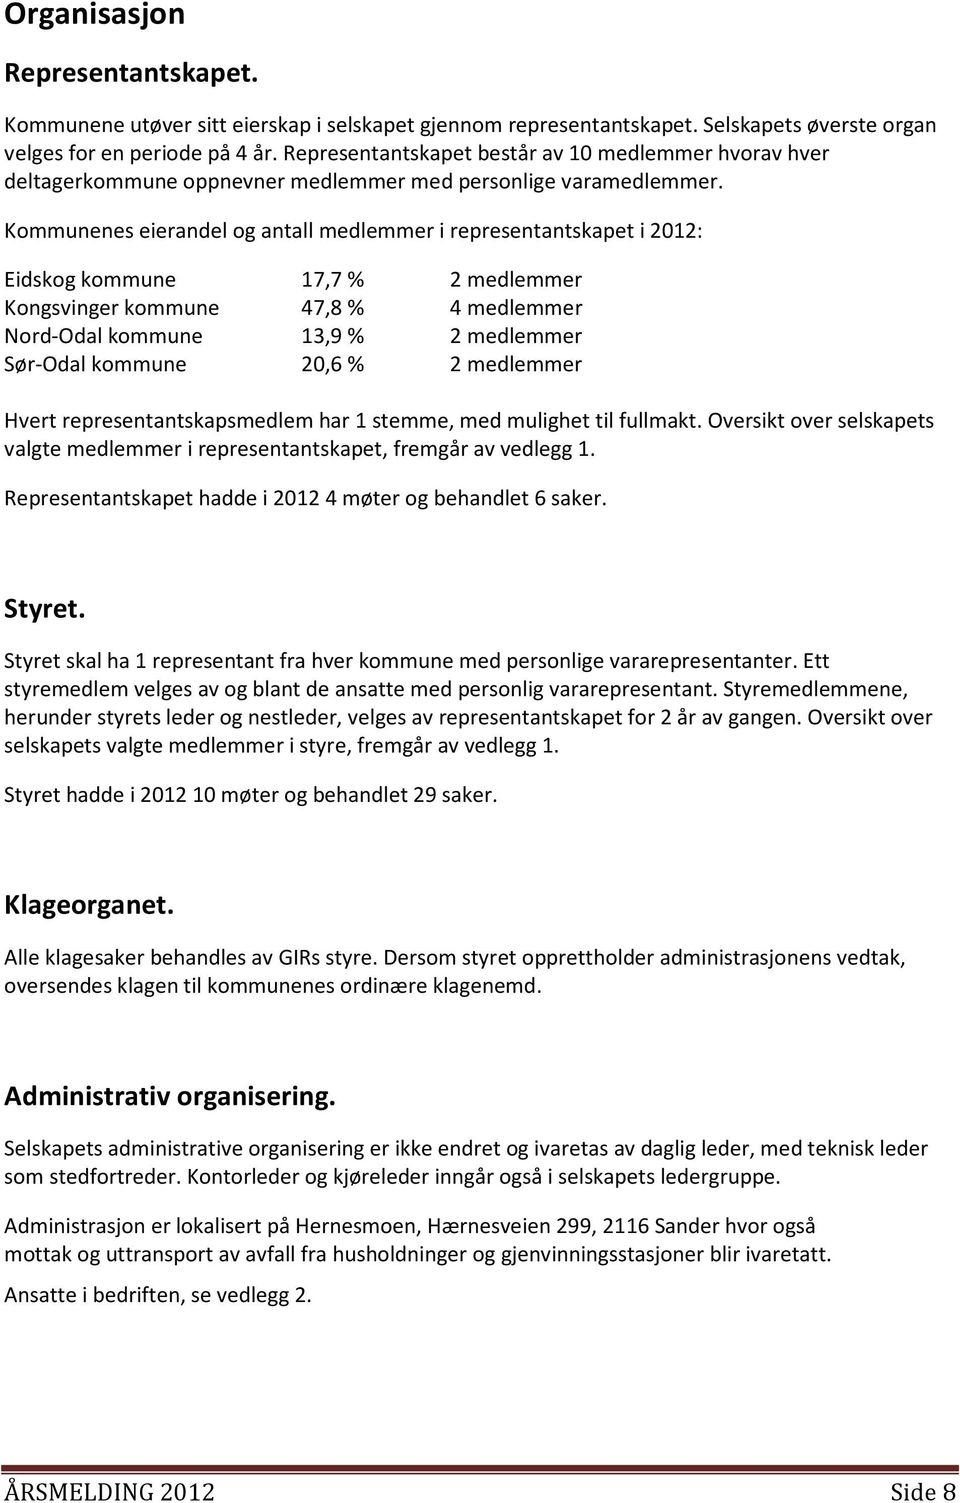 Kommunenes eierandel og antall medlemmer i representantskapet i 2012: Eidskog kommune 17,7 % 2 medlemmer Kongsvinger kommune 47,8 % 4 medlemmer Nord-Odal kommune 13,9 % 2 medlemmer Sør-Odal kommune